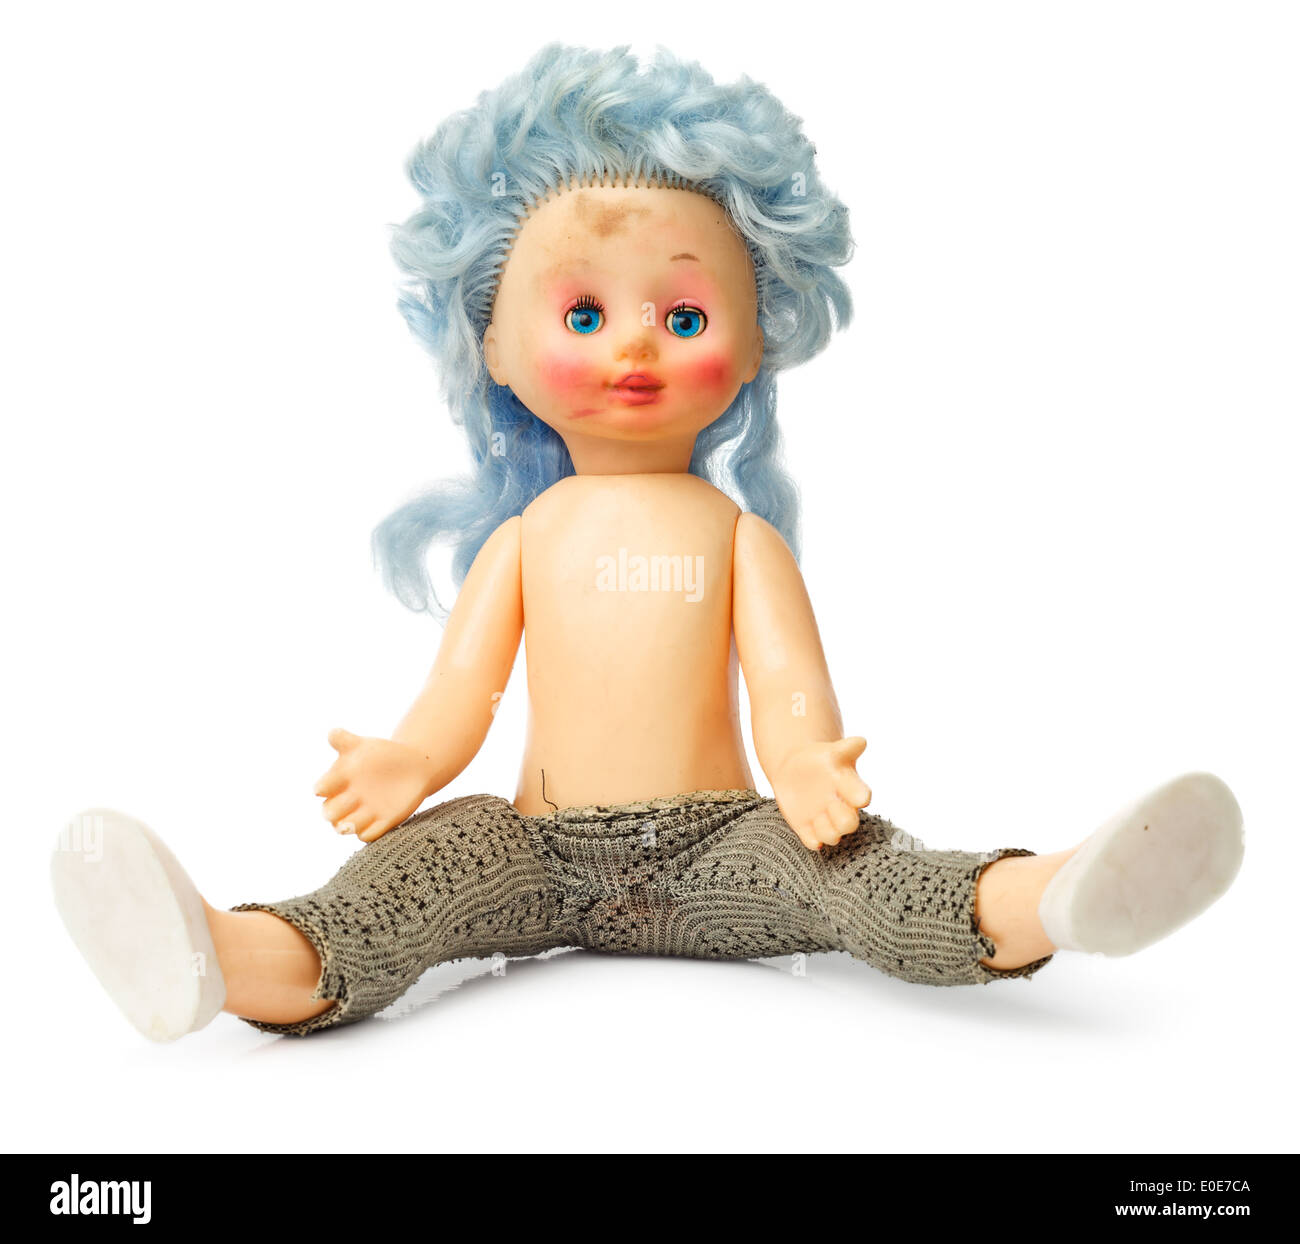 Ancienne poupée en plastique sale avec des cheveux bleus isolé sur fond blanc Banque D'Images